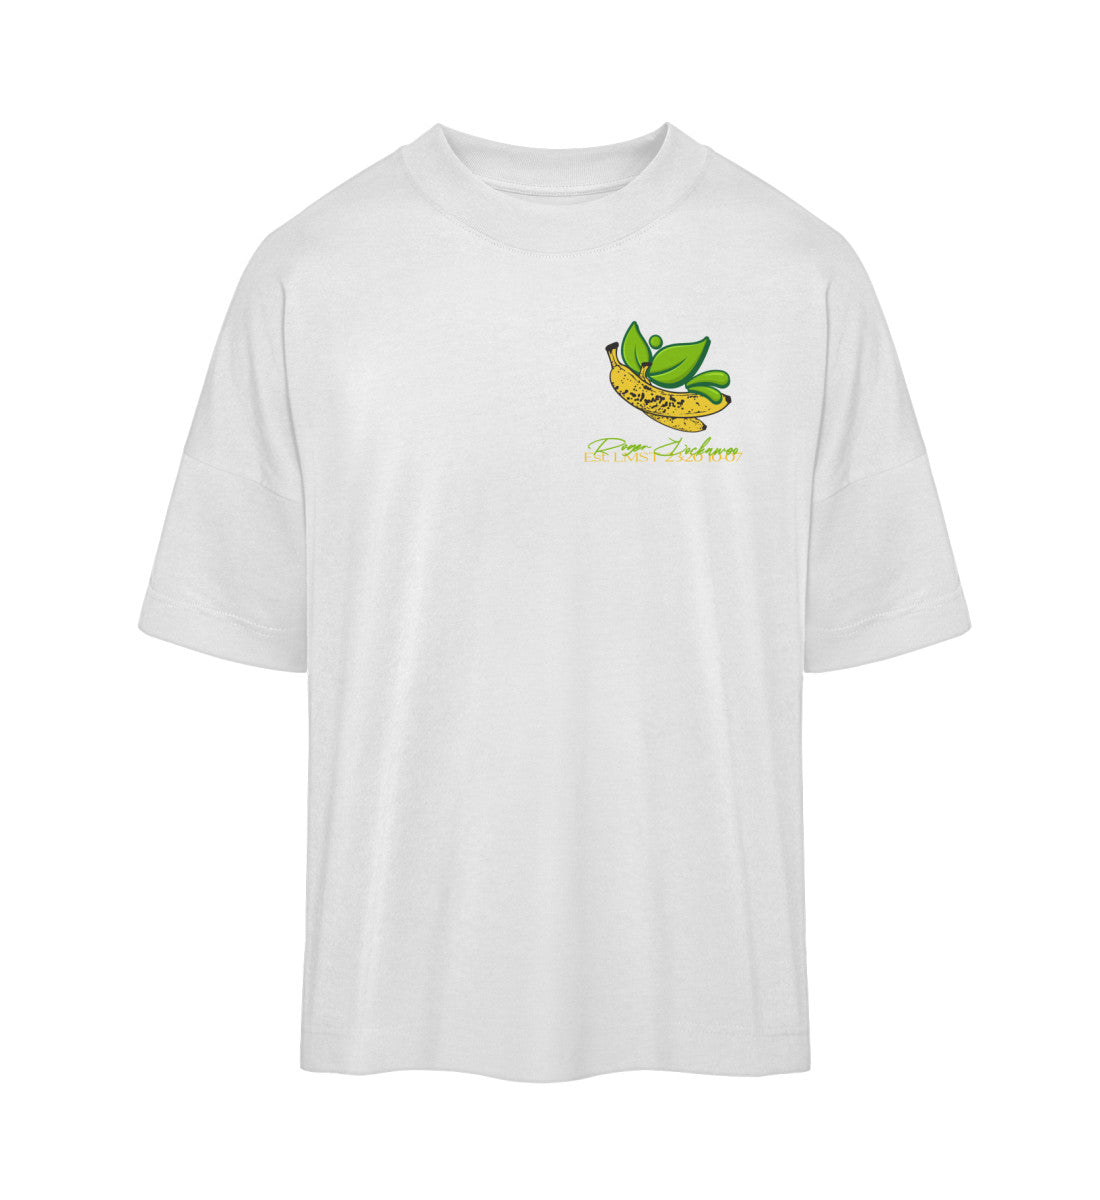 Weißes T-Shirt Unisex Oversize Fit für Frauen und Männer bedruckt mit dem Design der Roger Rockawoo Kollektion vegan as